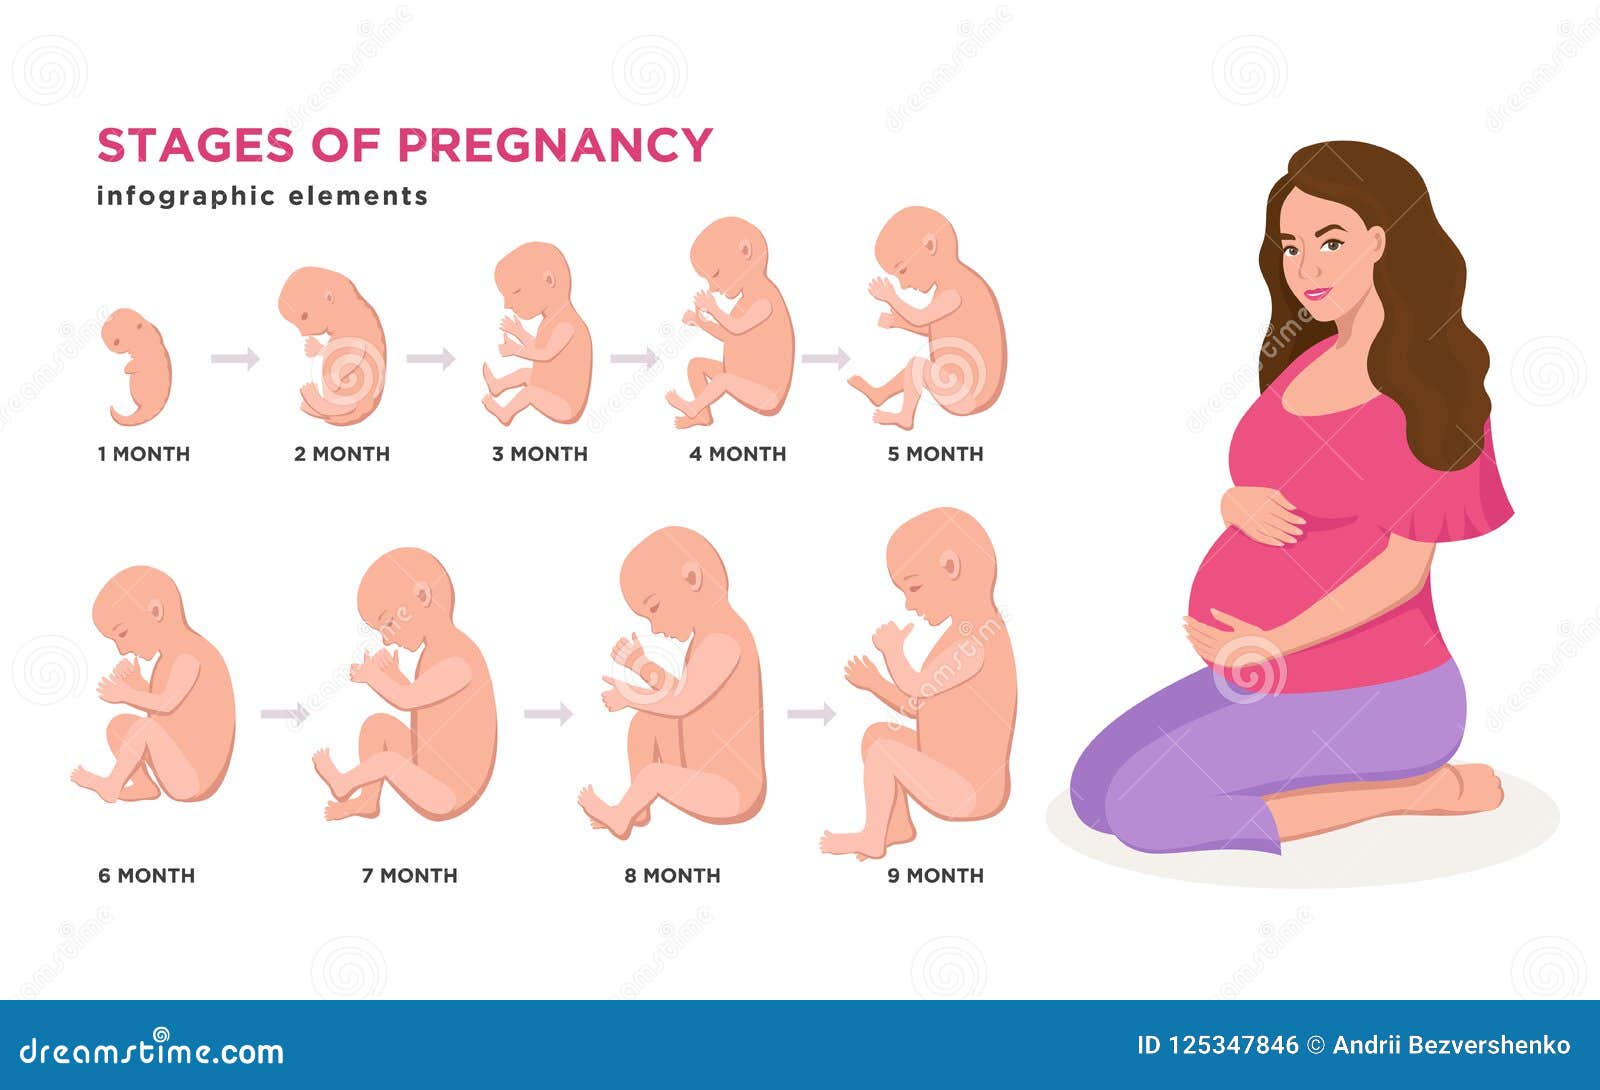 Las Etapas Del Embarazo El Embarazo Reproduccion Humana Images Images